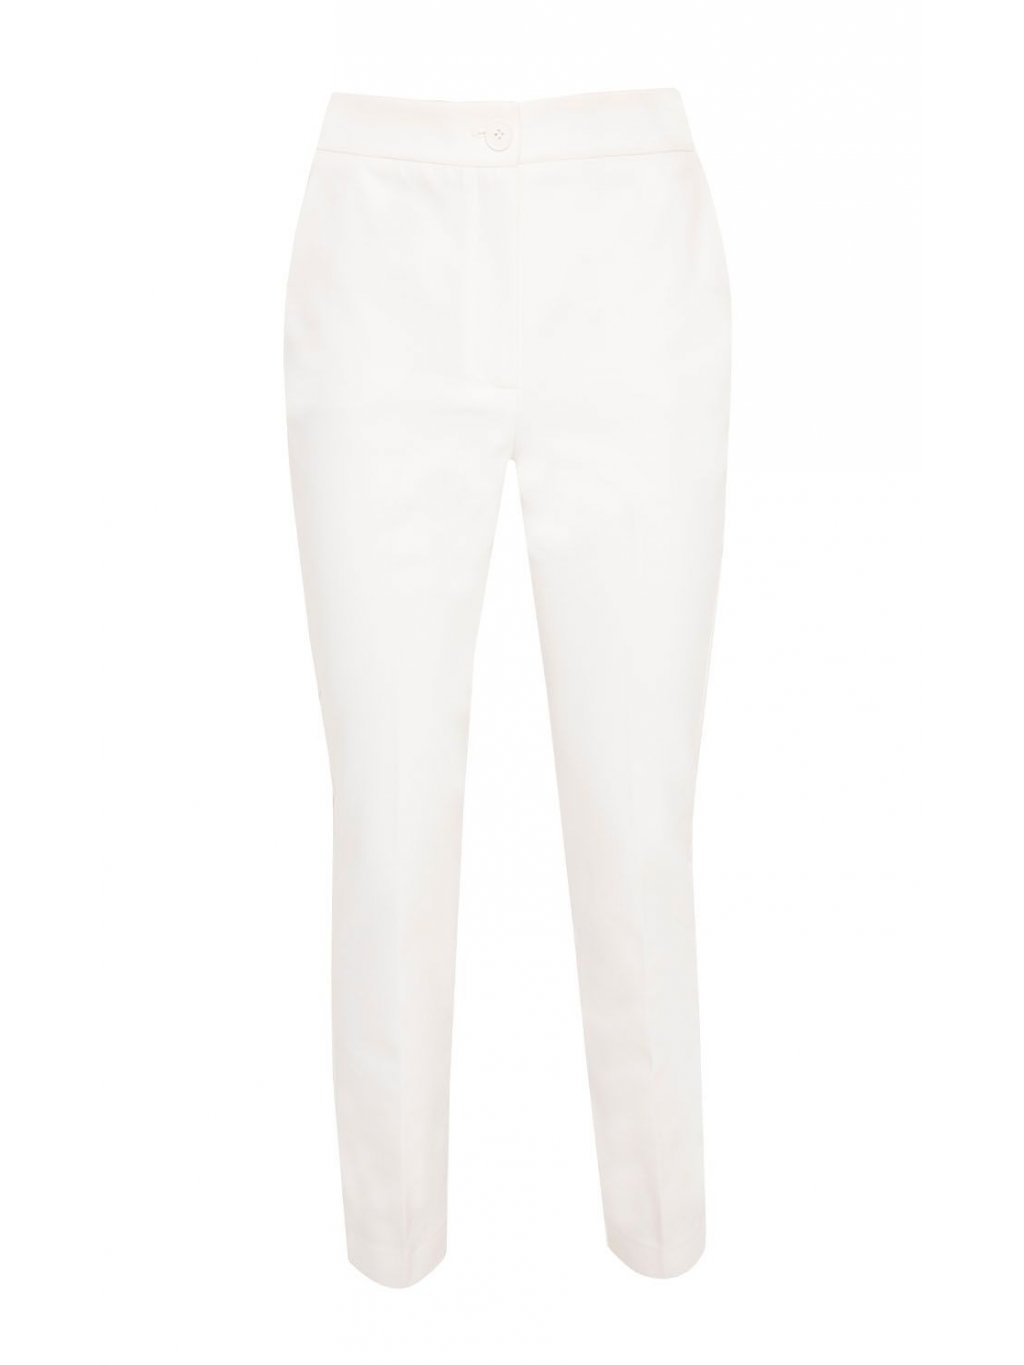 Kalhoty Zaps Adoncia jemně bílé